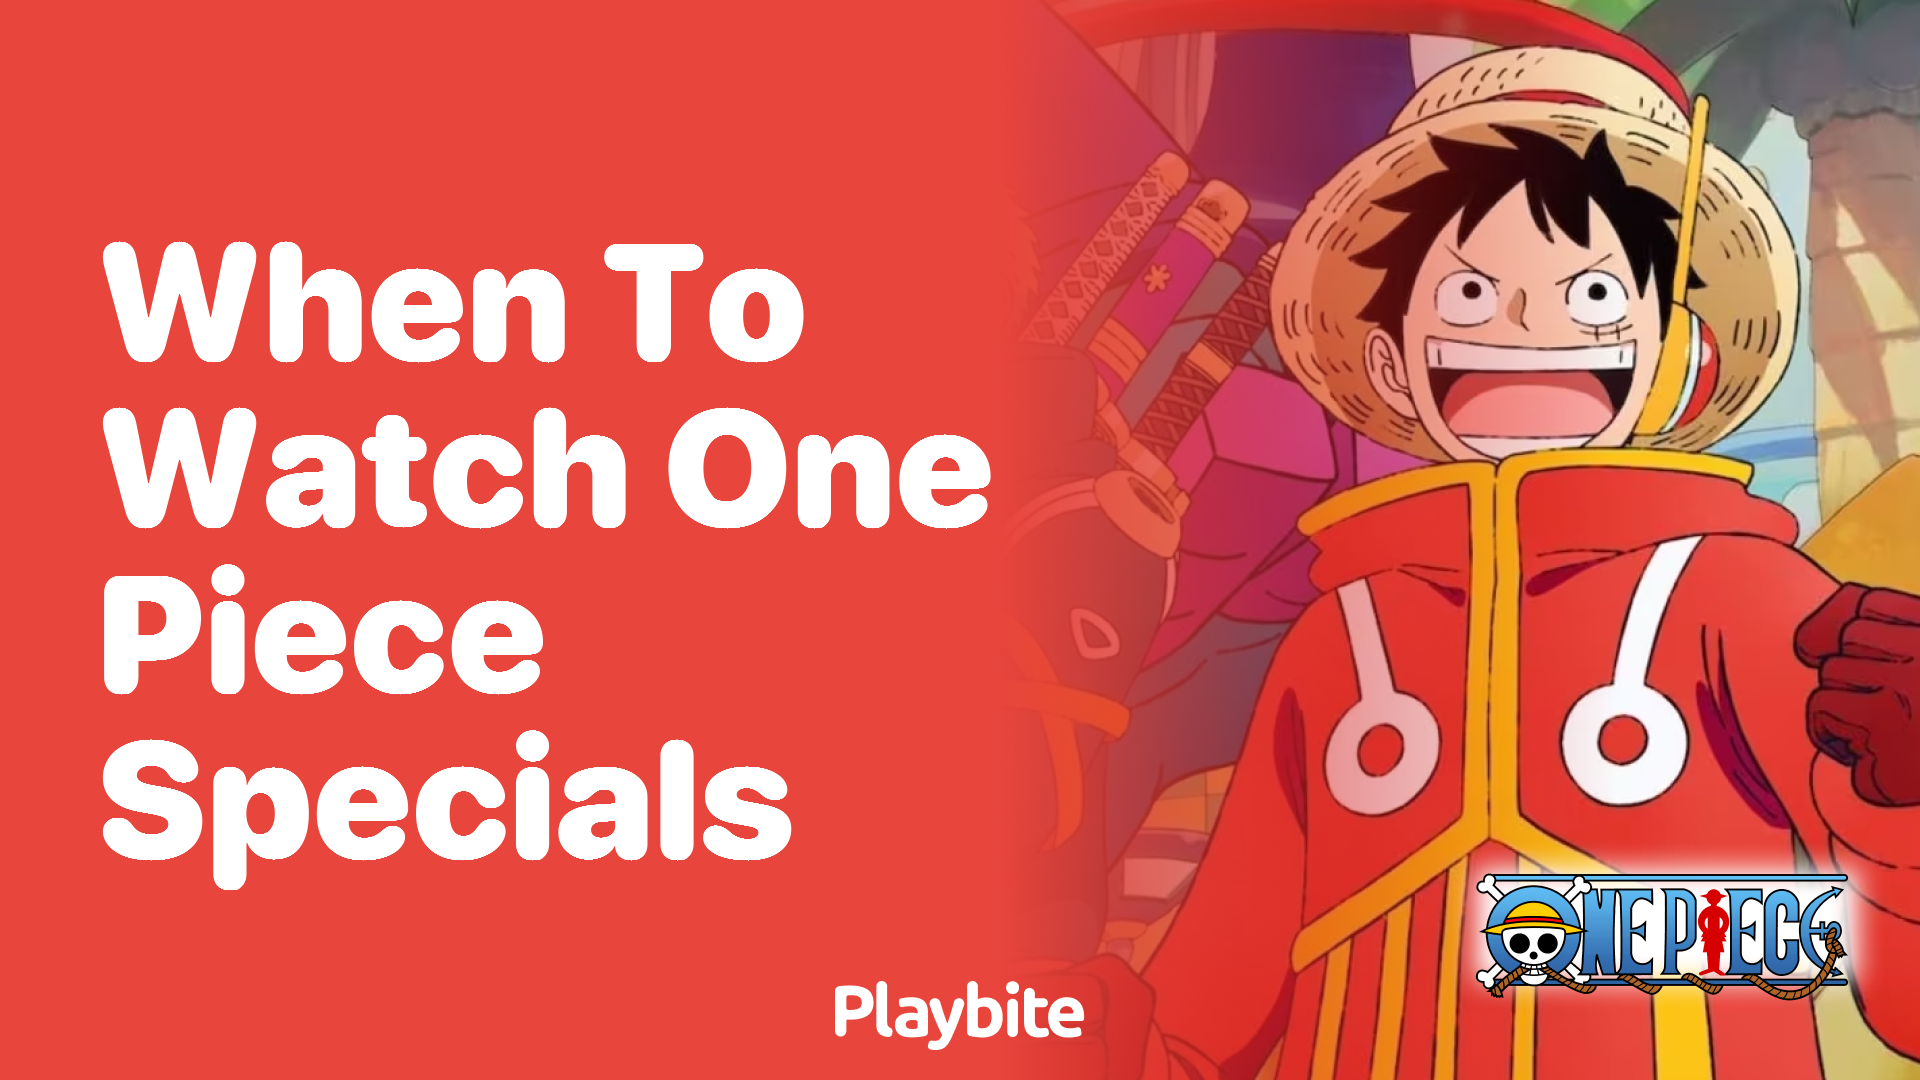 When to Watch One Piece Specials